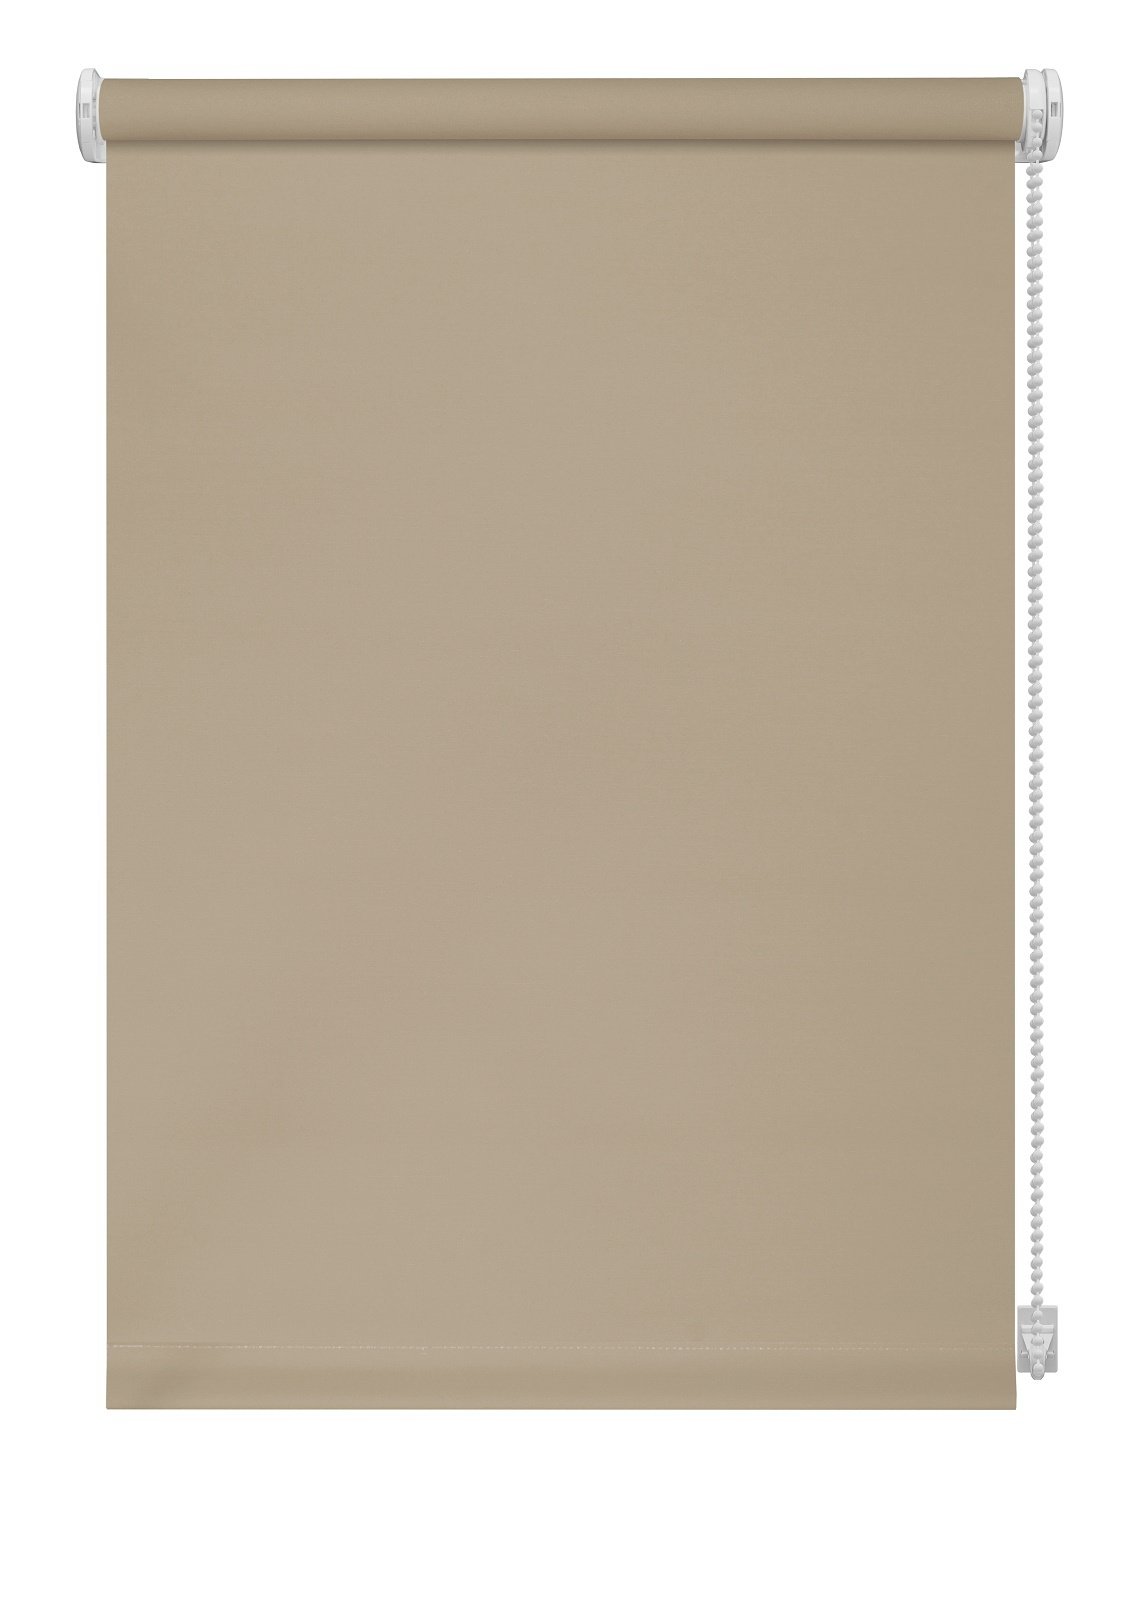 Klasikinė ritininė užuolaida LIGHT 301, smėlio sp., 180 x 170 cm - 2